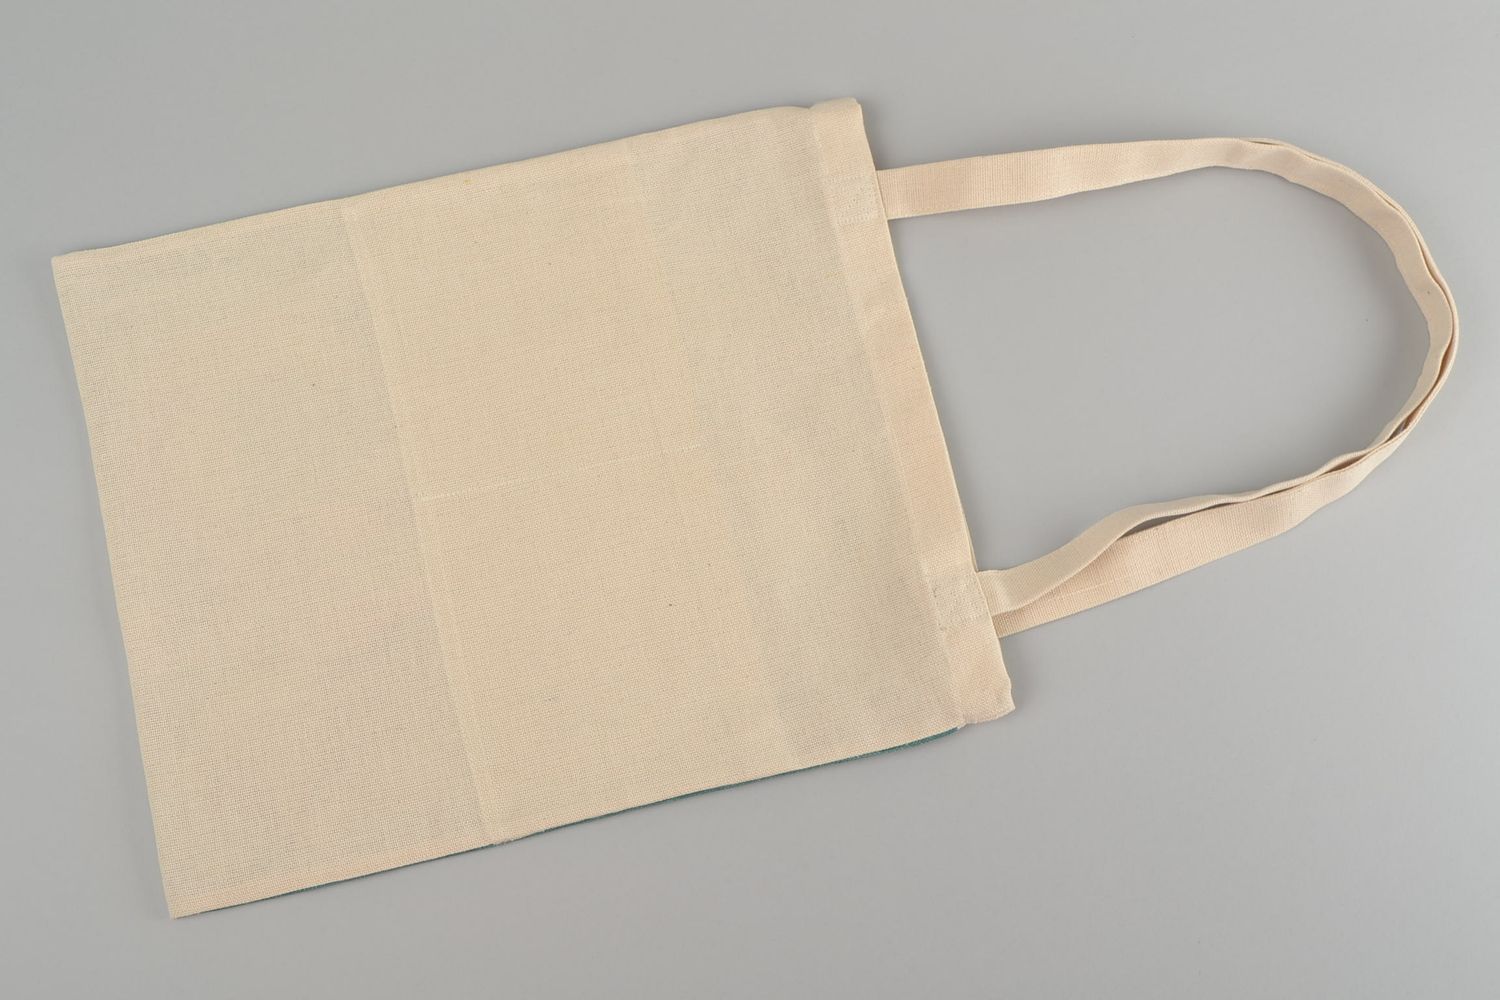 Женская сумка из ткани в эко-стиле большая с этническим рисунком ручной работы фото 5